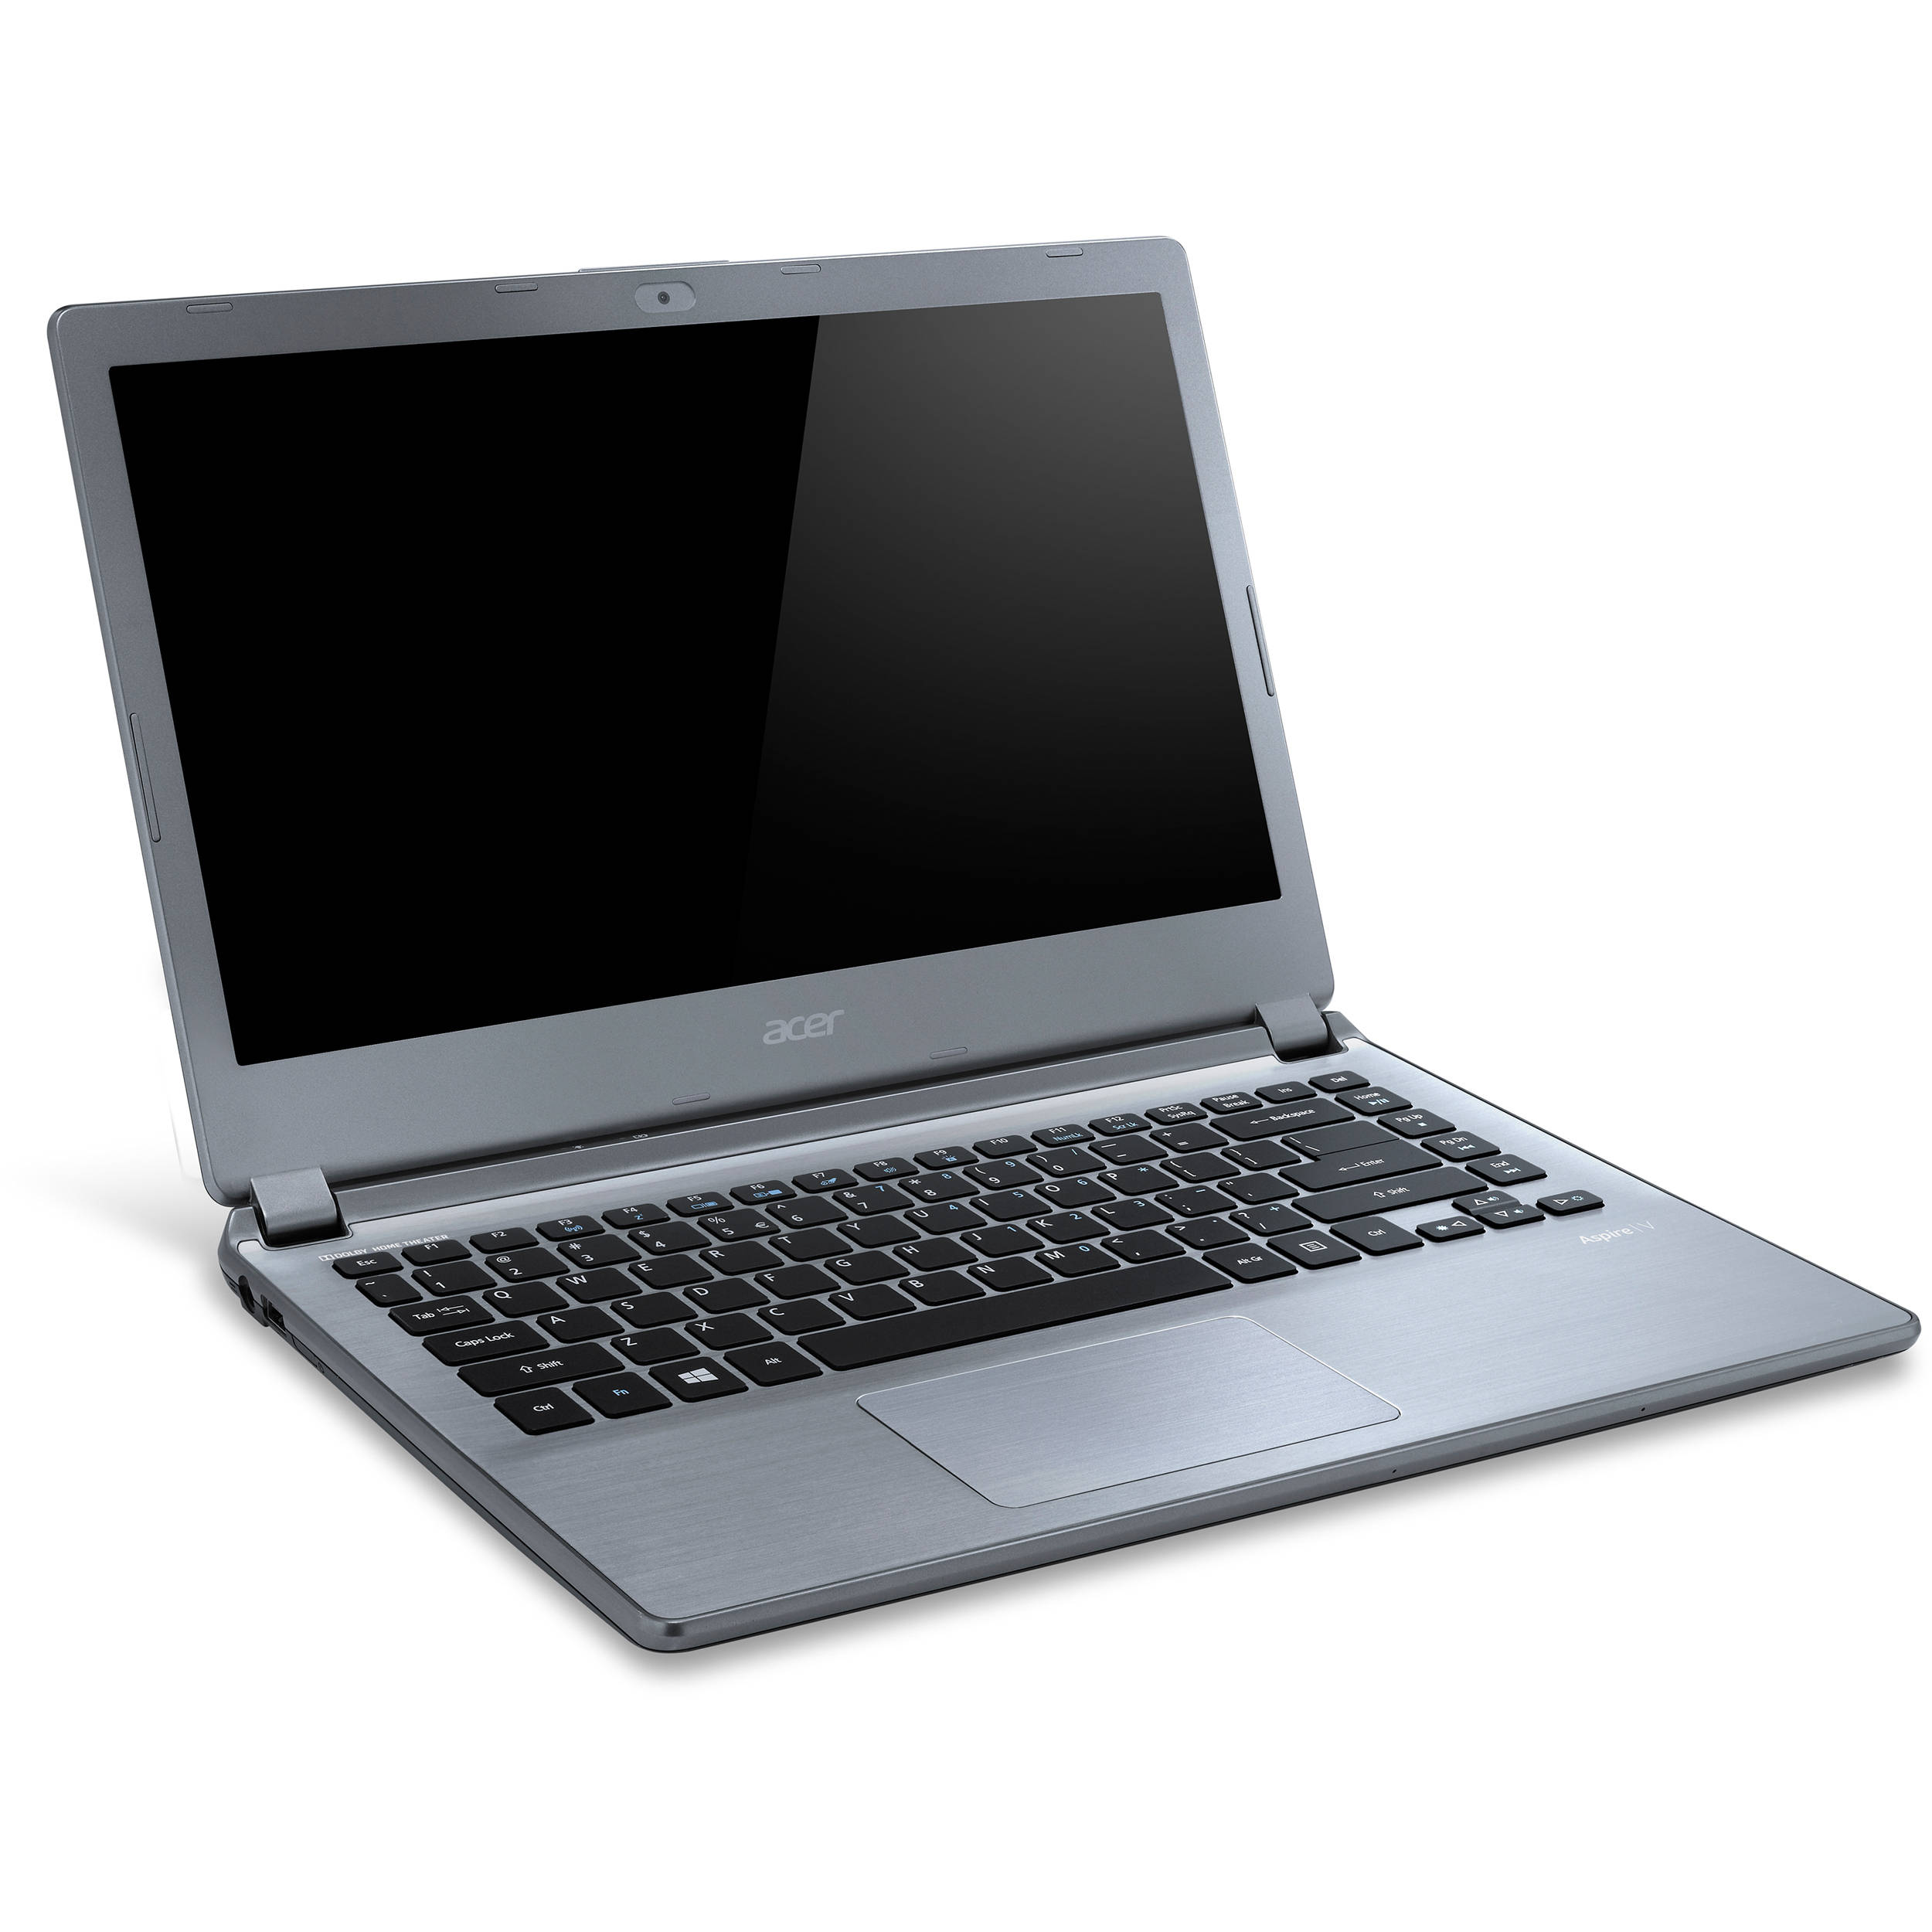 Acer Aspire V7-482P Notebook